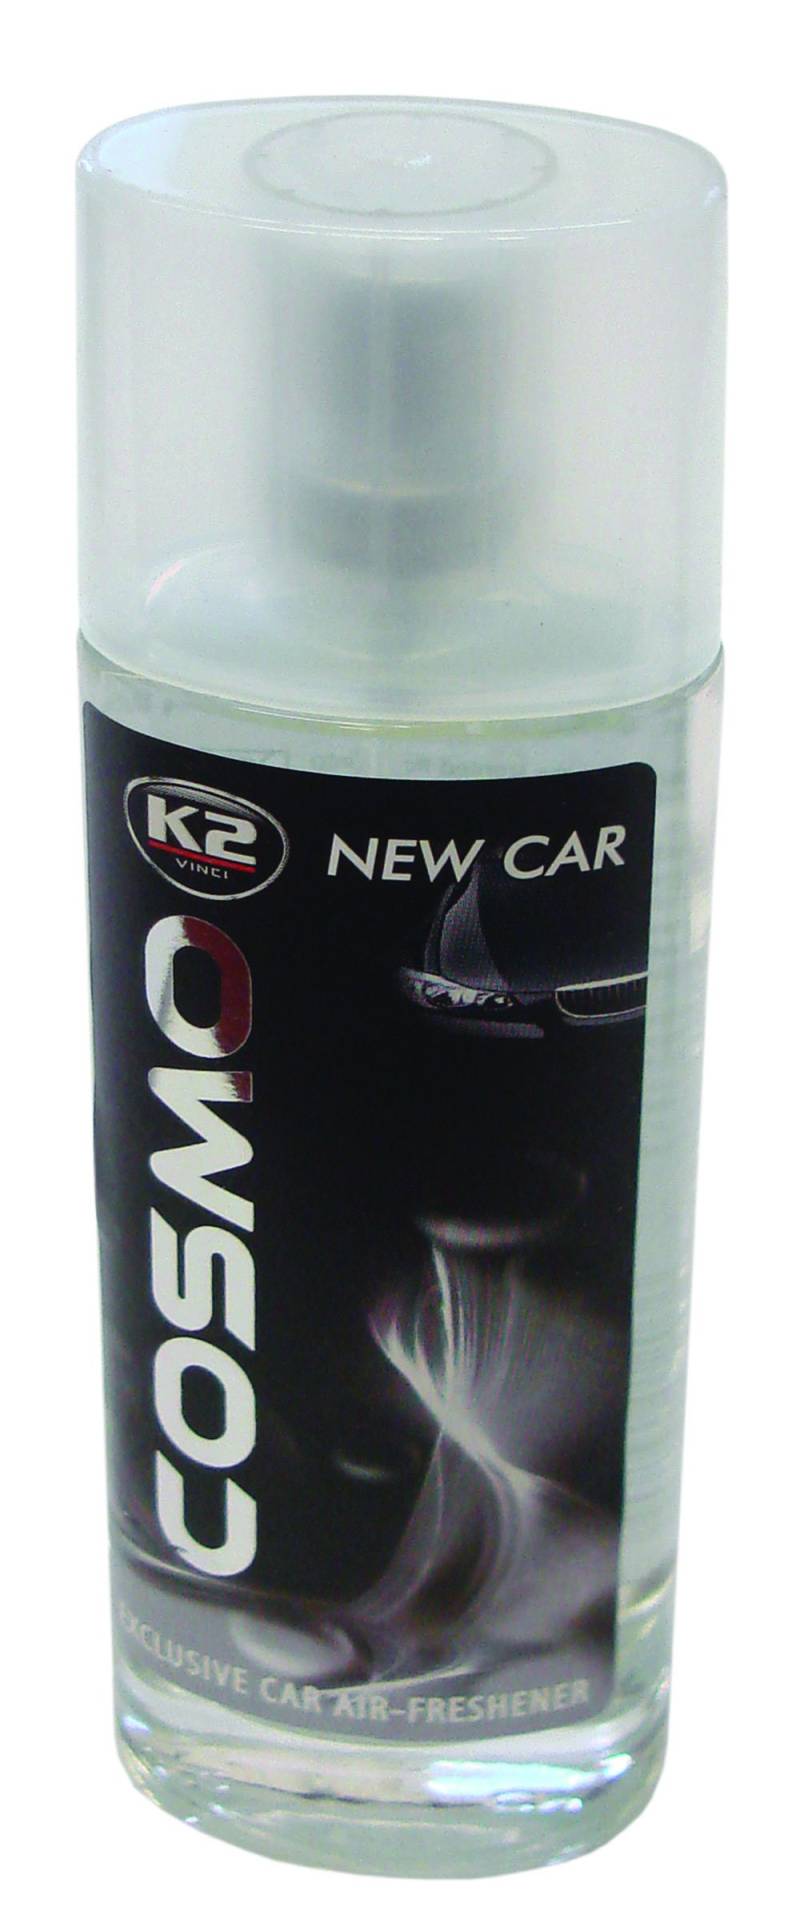 K2 Cosmo edle Auto Parfumflasche, sehr intensiv, ideal um schlechte Gerüche zu entfernen, Lufterfrischer, Wunderbaum, Duftbaum, Duft: neues Auto 50ml von K2